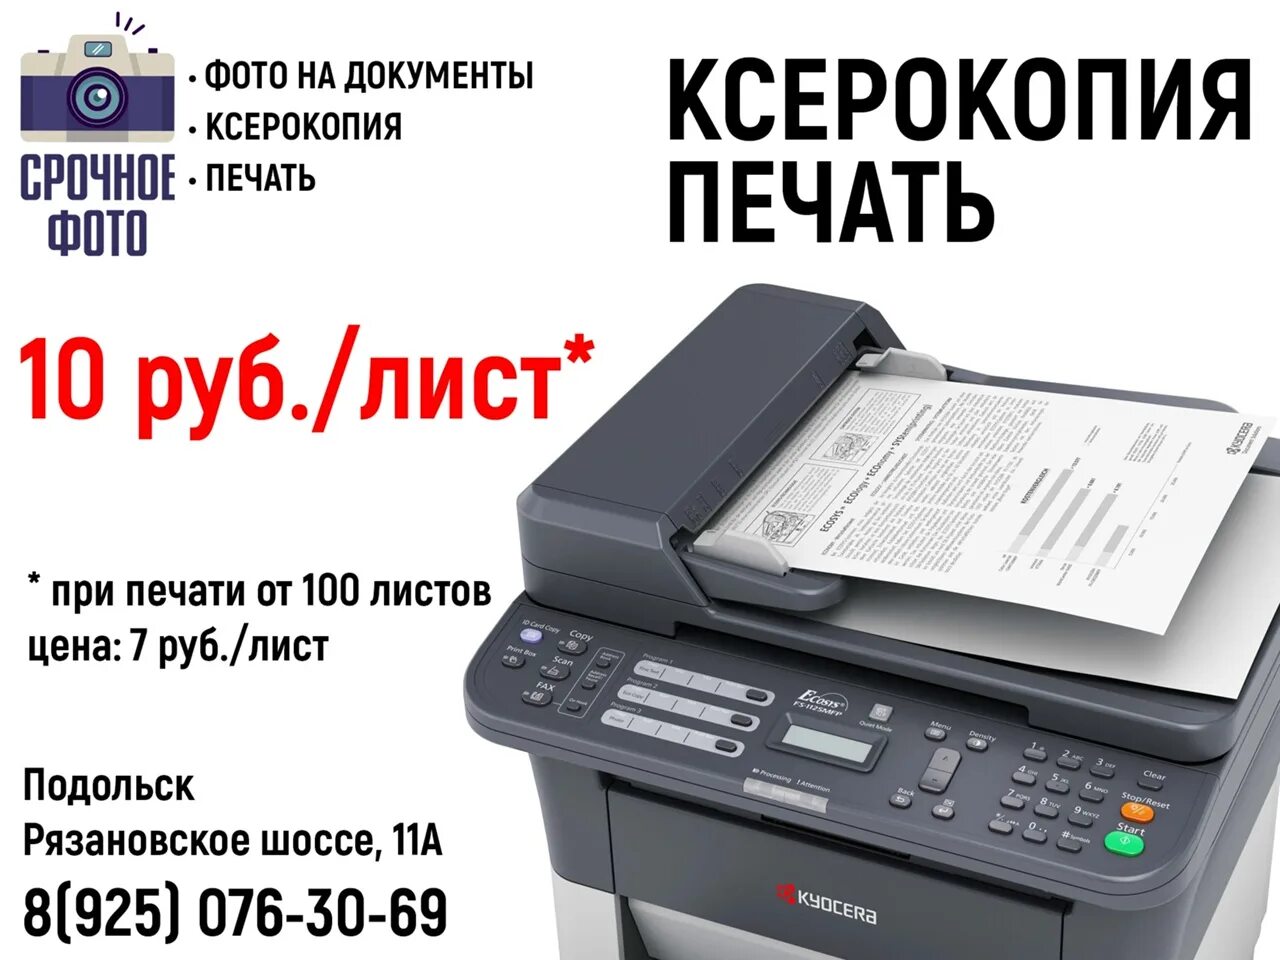 Где можно распечатать файл. Ксерокопия печать. Ксерокопия распечатка. Ксерокс распечатка. Ксерокопия распечатка сканирование.